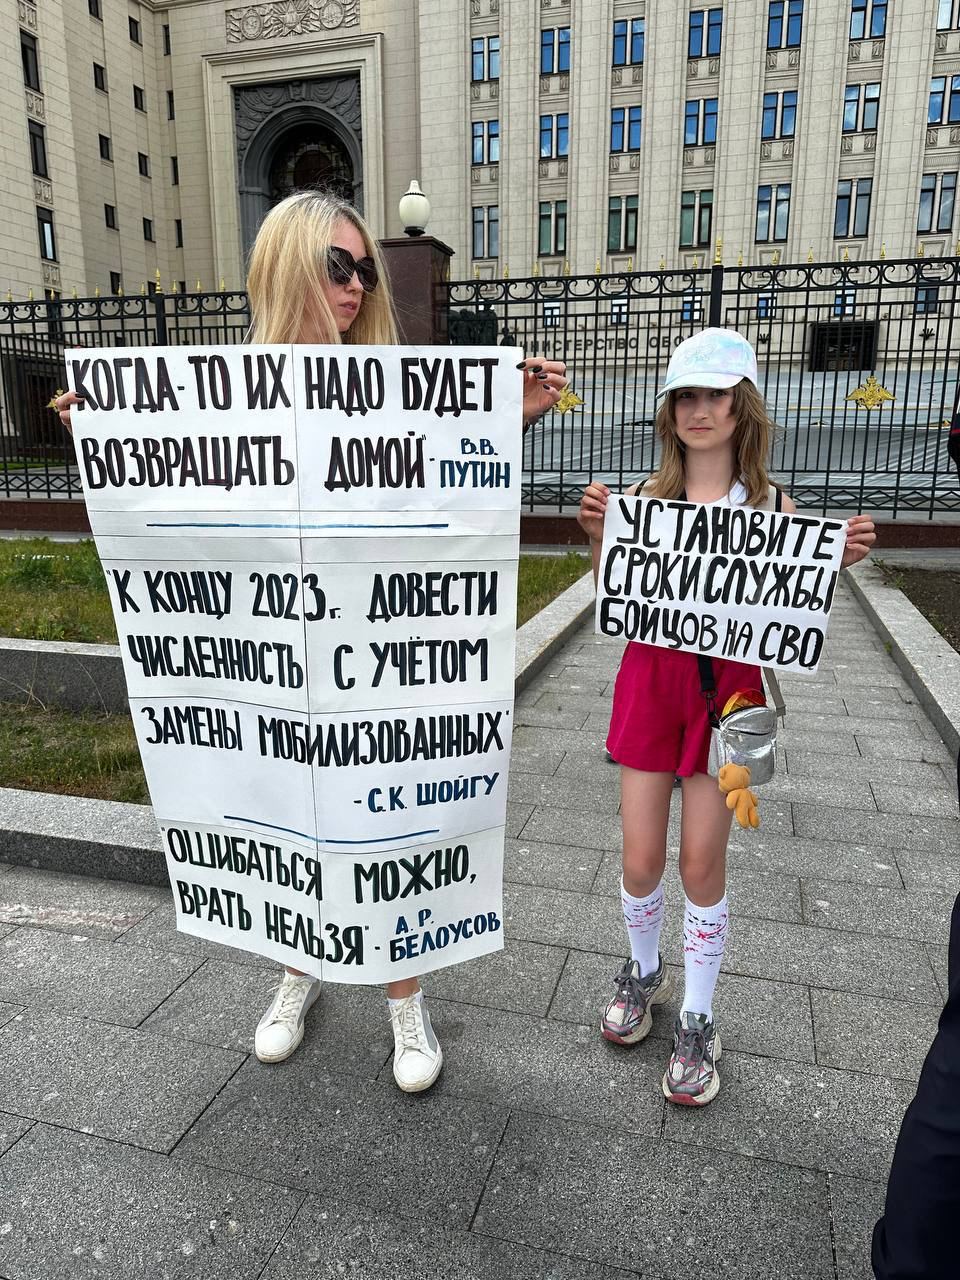 Фото участниц пикета в Москве. Источник - Телеграм